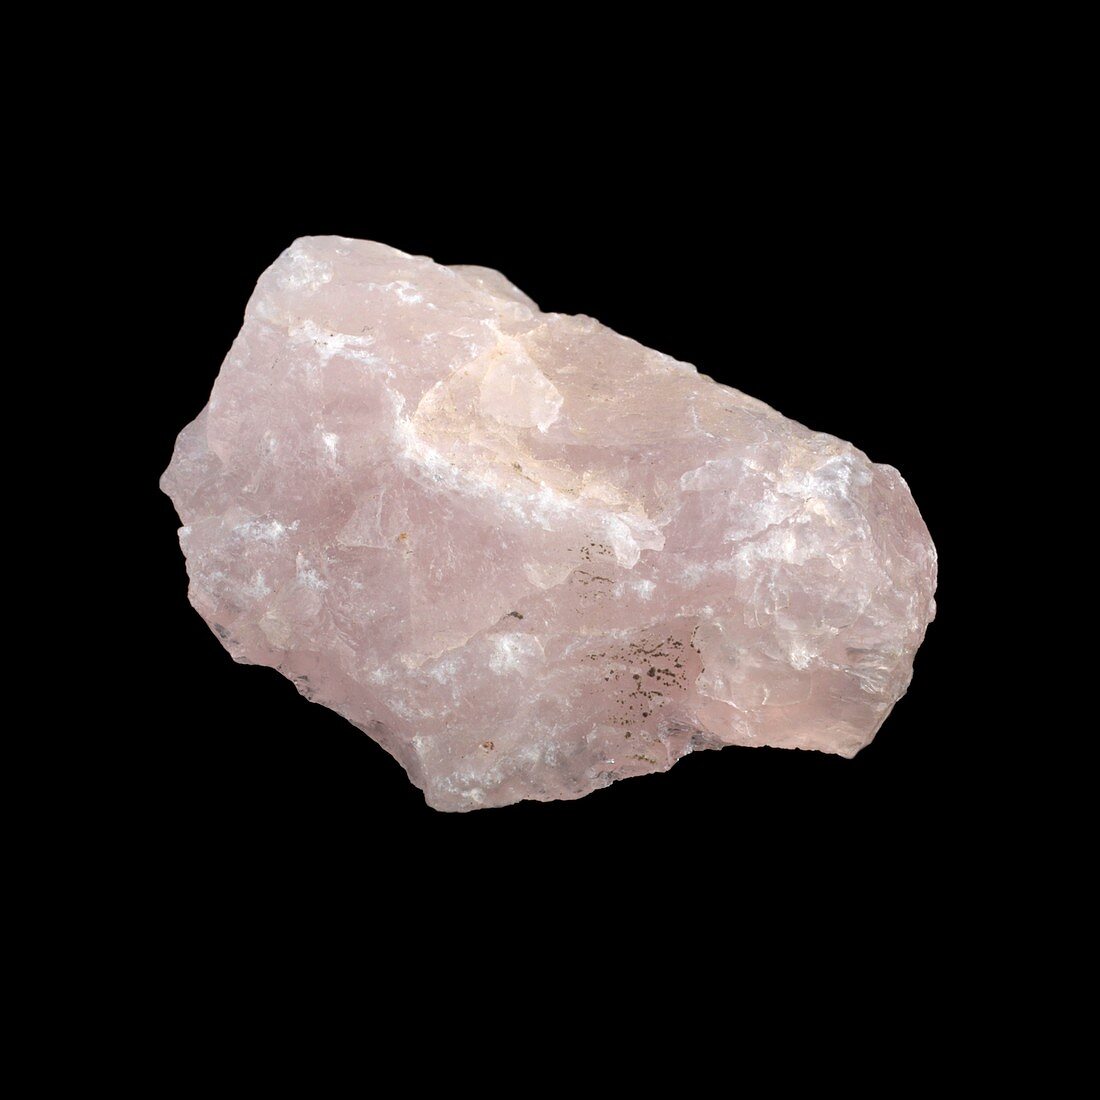 Sample of rose quartz